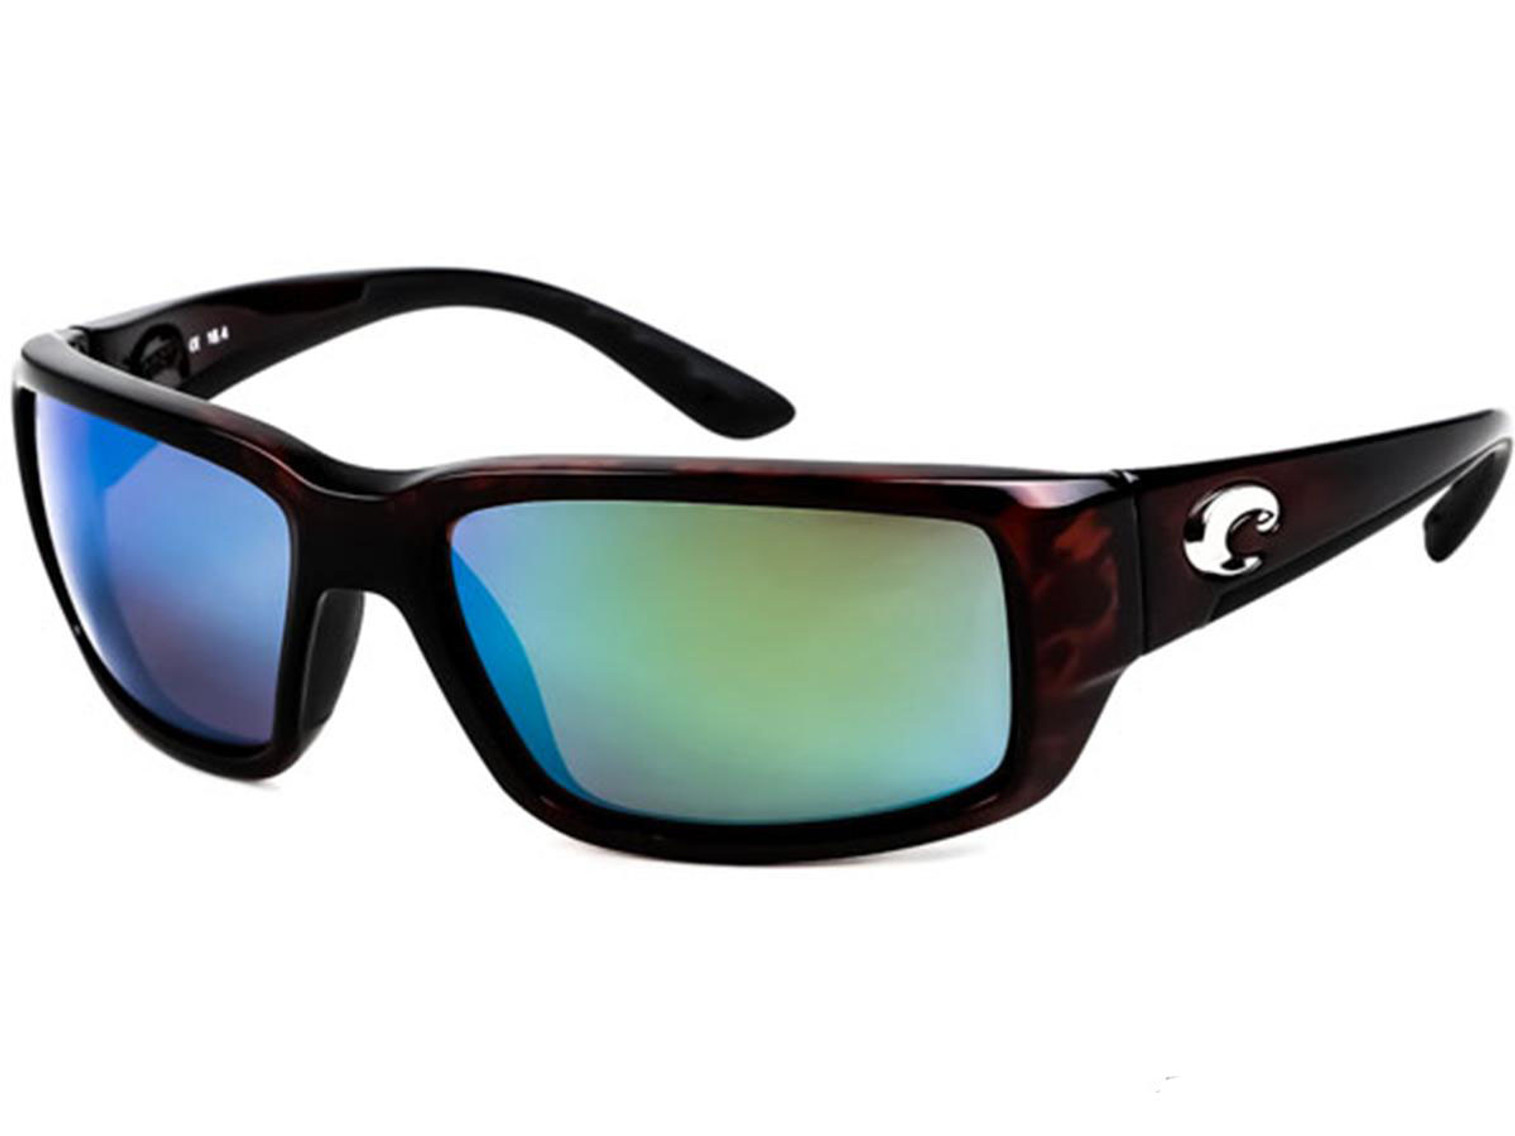 Costa Del Mar - Fantail Polarized Sunglasses - Tortoise / 580g Green Mirror